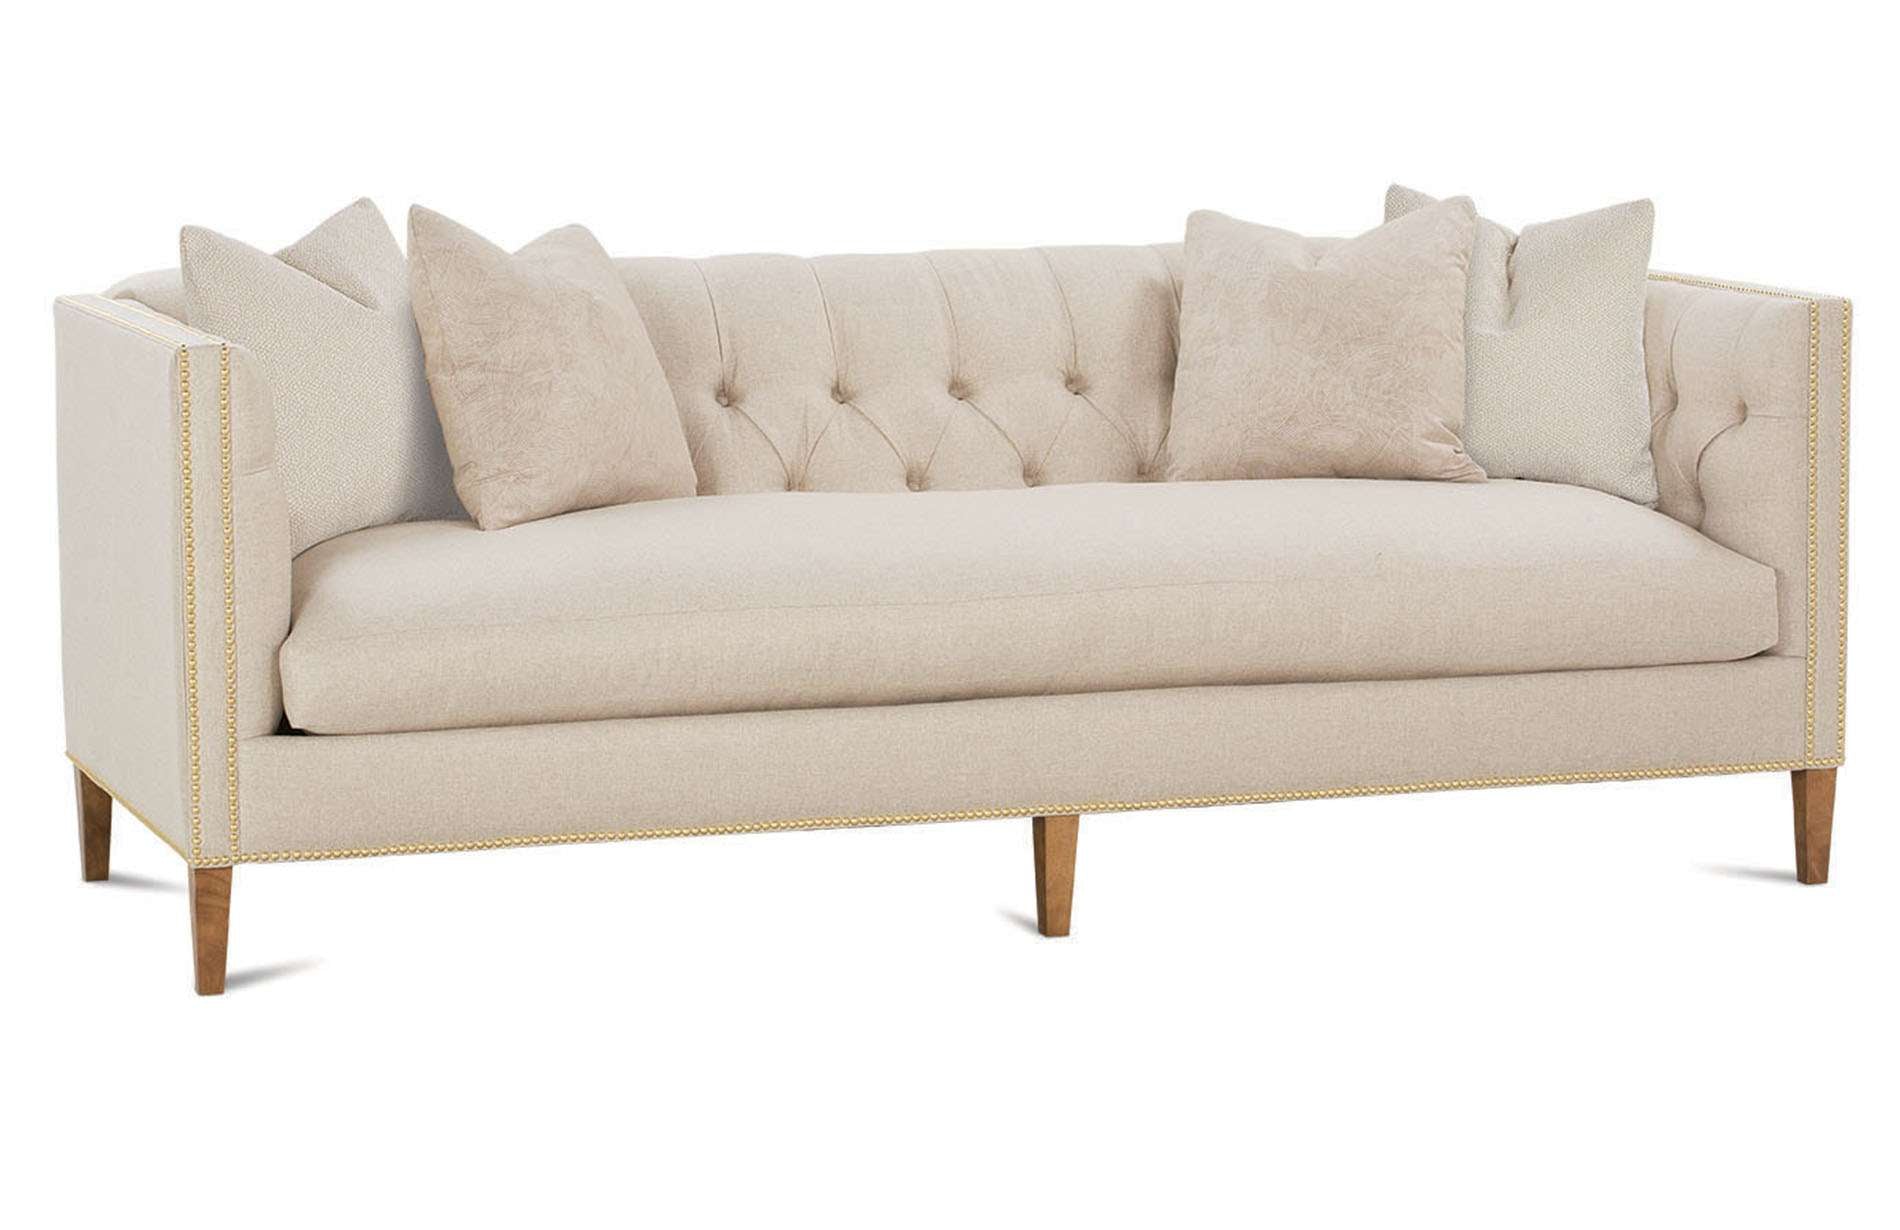 Brette Bench Cushion Sofa - Rug & Home